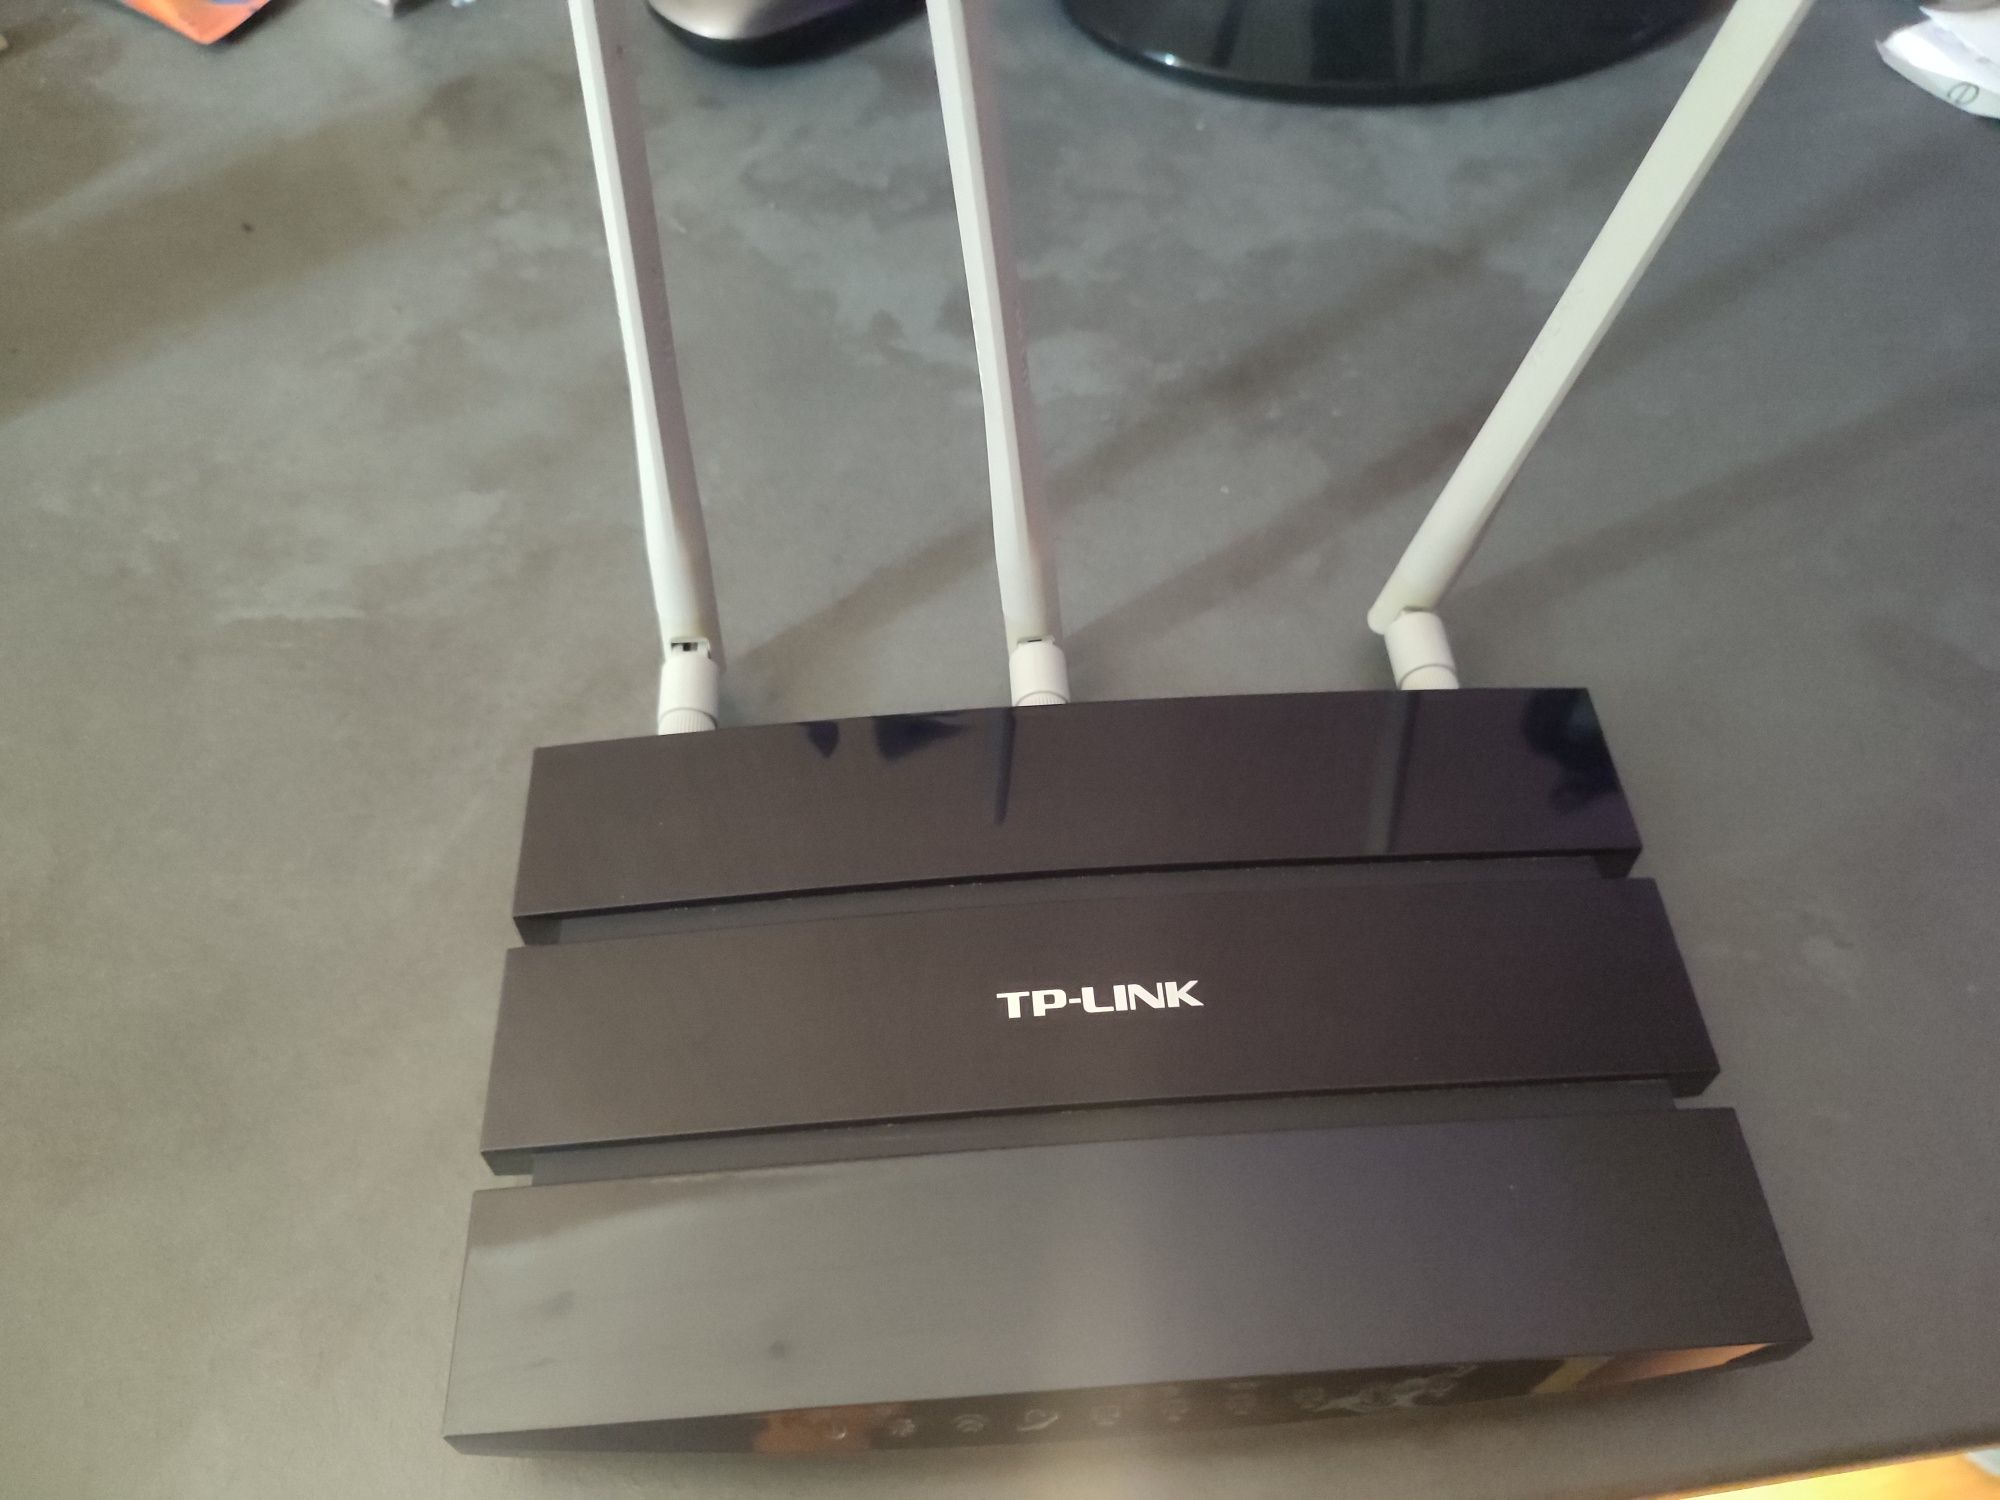 Router Wi-Fi TP-LINK TL-WR1043ND v2.1 Gargoyle PL